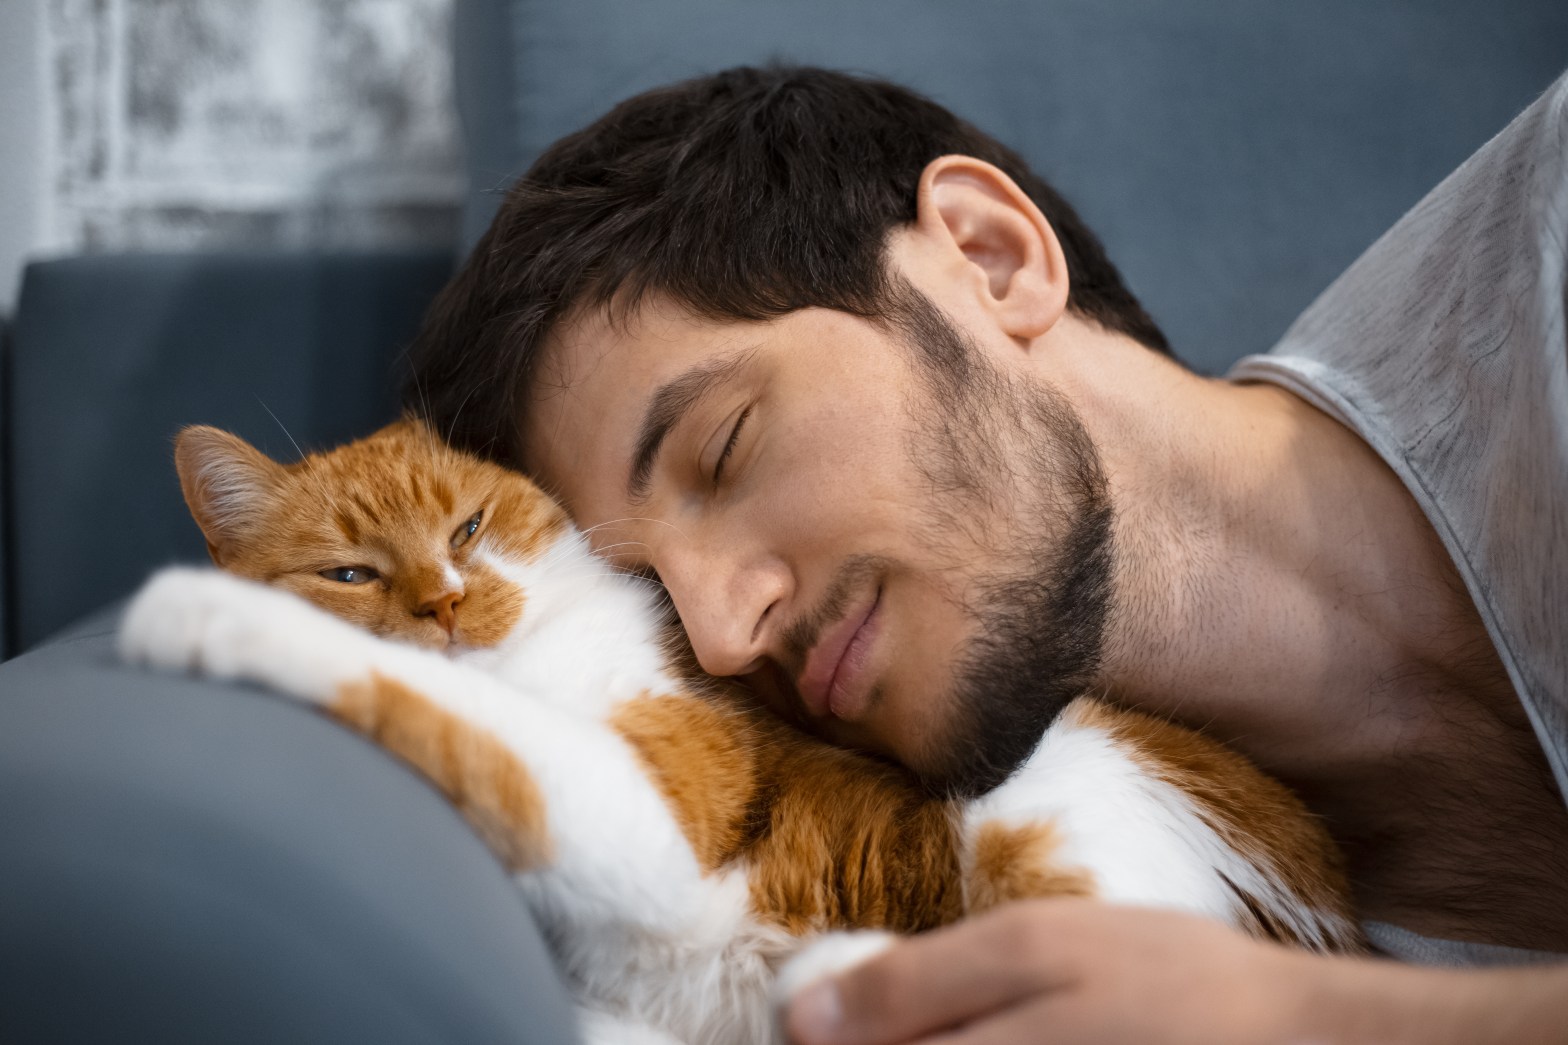 Кошка и мужчина спят картинки. Man and Cat Dancing on Sofa. Petting men